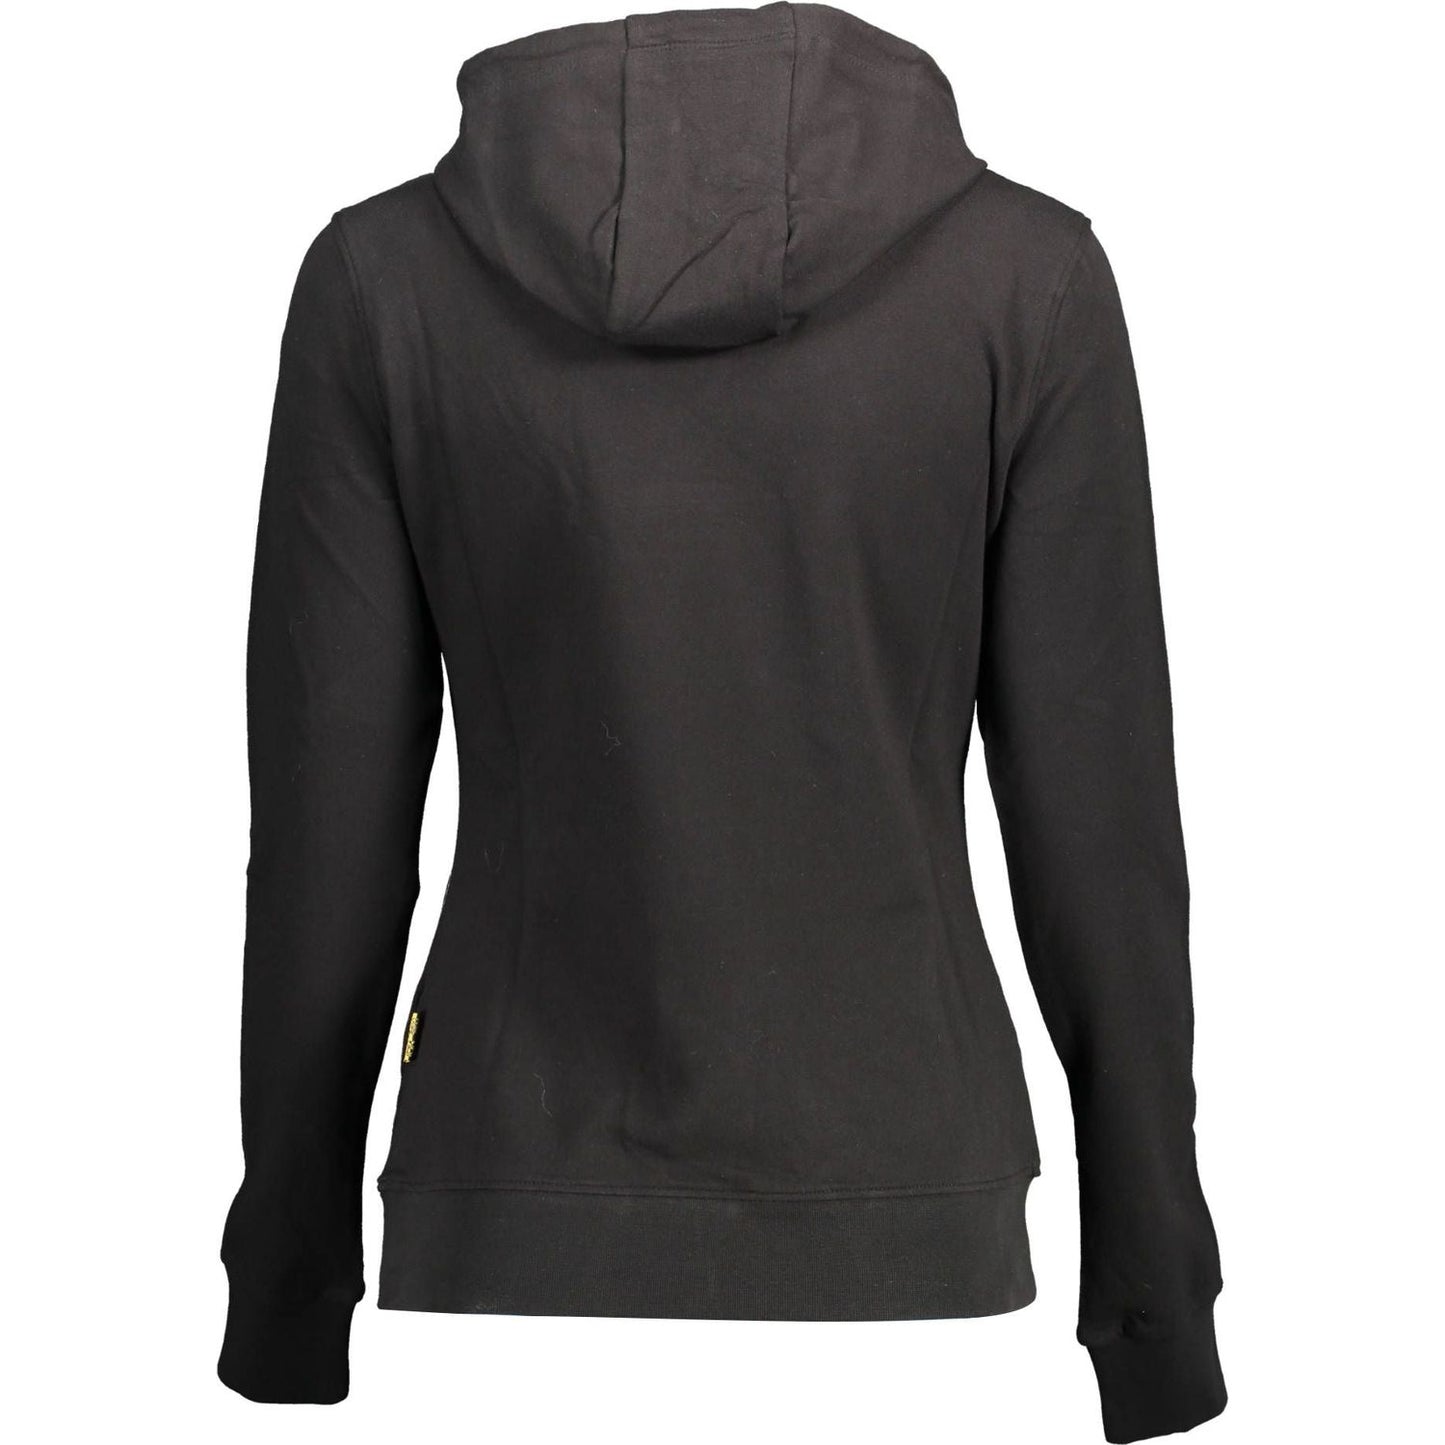 Plein SportSleek Black Hooded Sweatshirt with Bold AccentsMcRichard Designer Brands£109.00